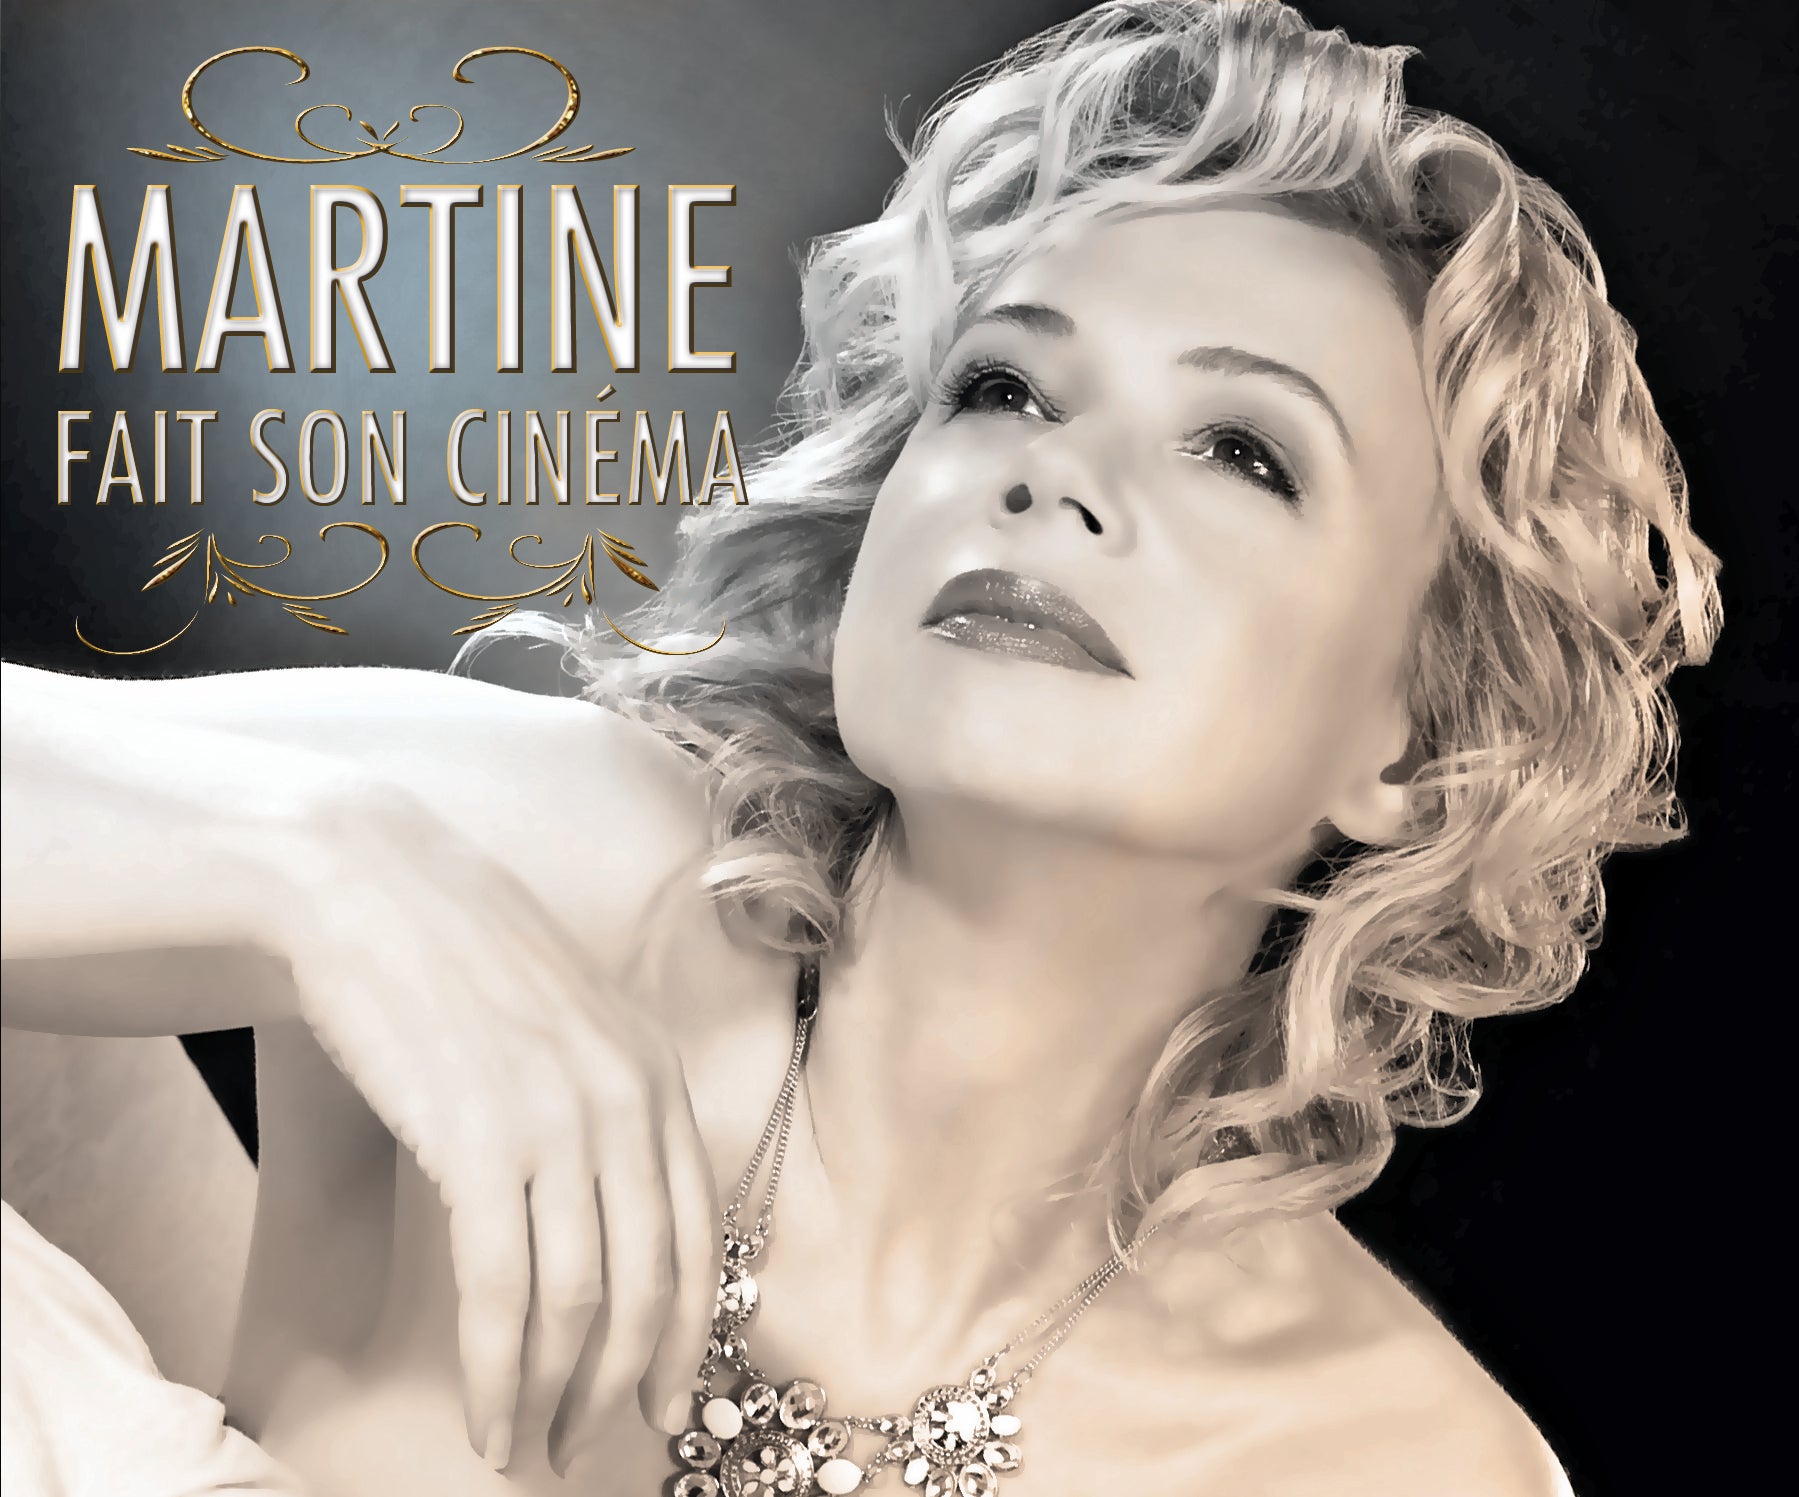 CD – Martine St-Clair – Martine fait son cinéma – TRICD7317